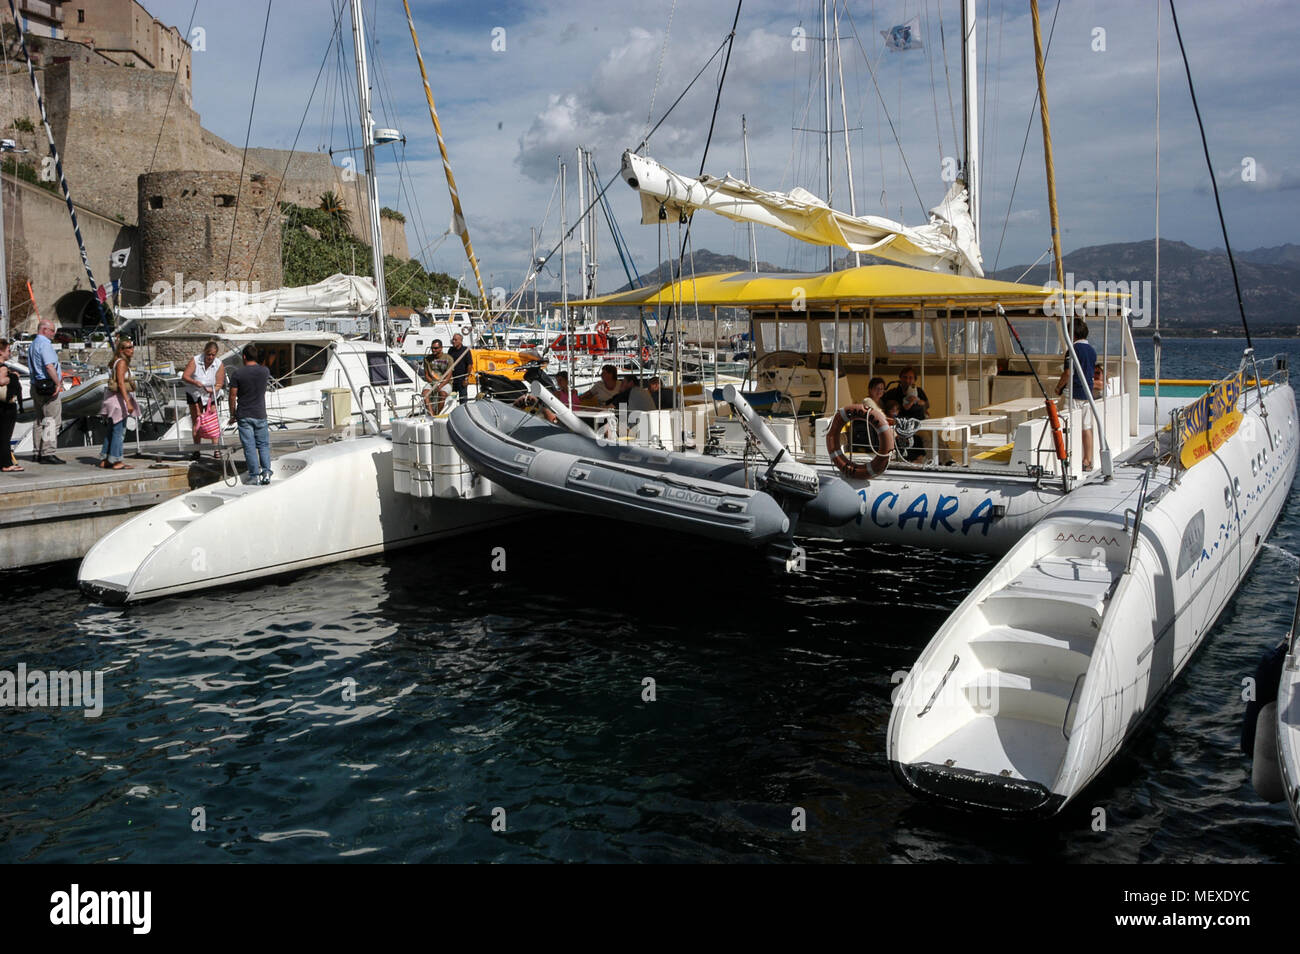 Un moored catamaran restauration pour de courtes excursions touristiques à Calvi port de plaisance sur le port de Calvi, en Corse, une île française au large de la côte sud Banque D'Images